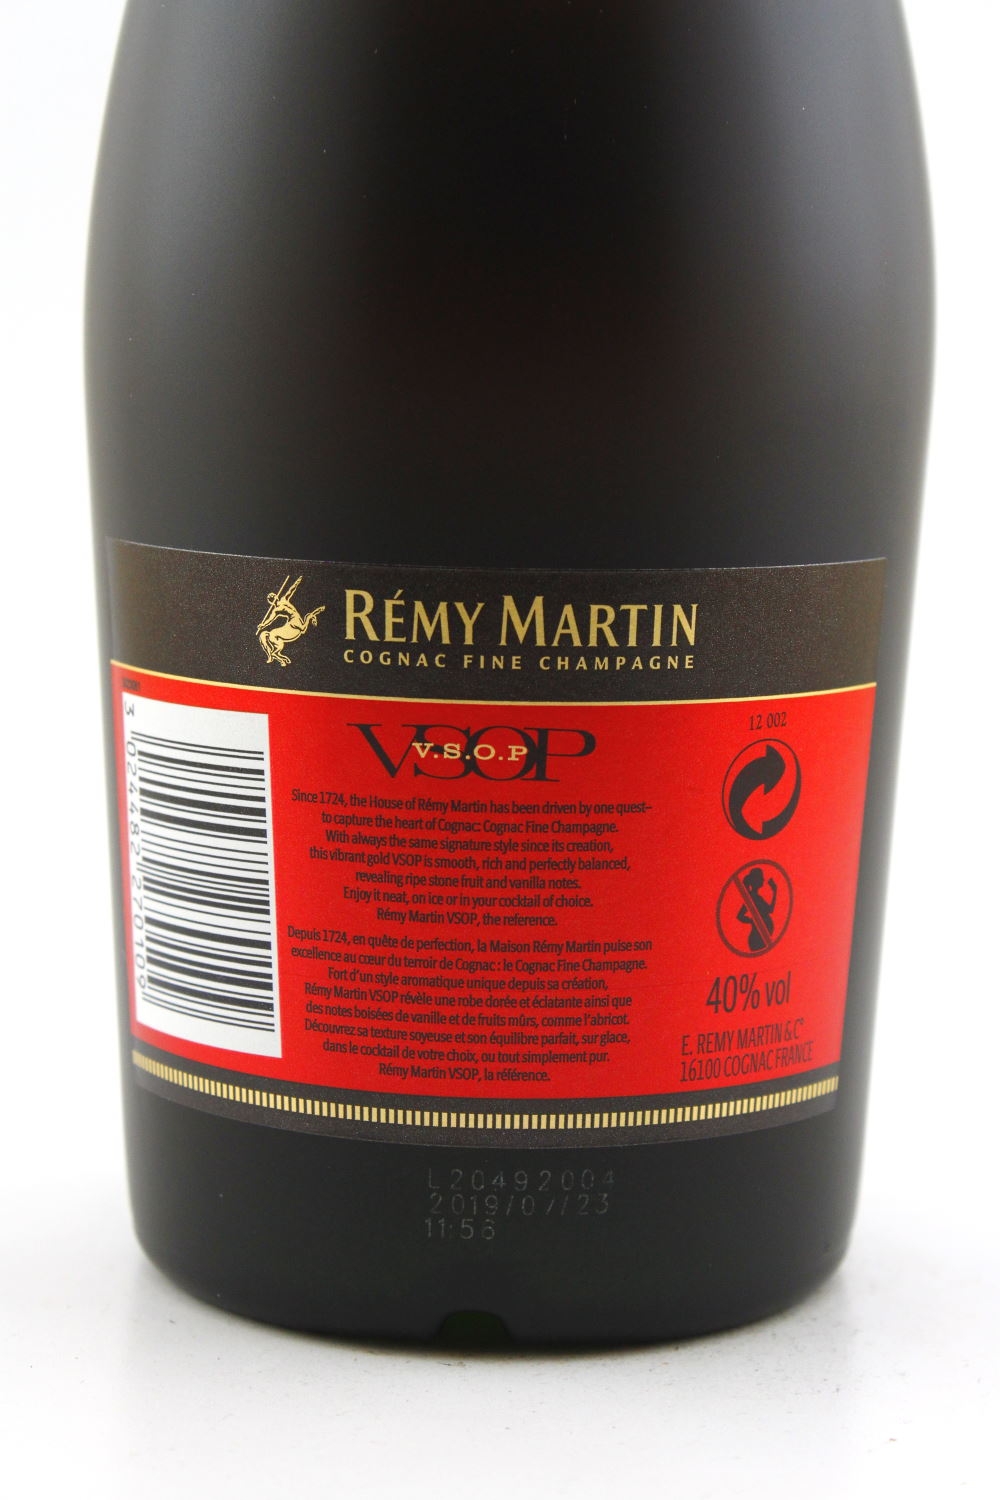 Fine Champagne Cognac Cognac vol. V.S.O.P. 40% Martin Remy